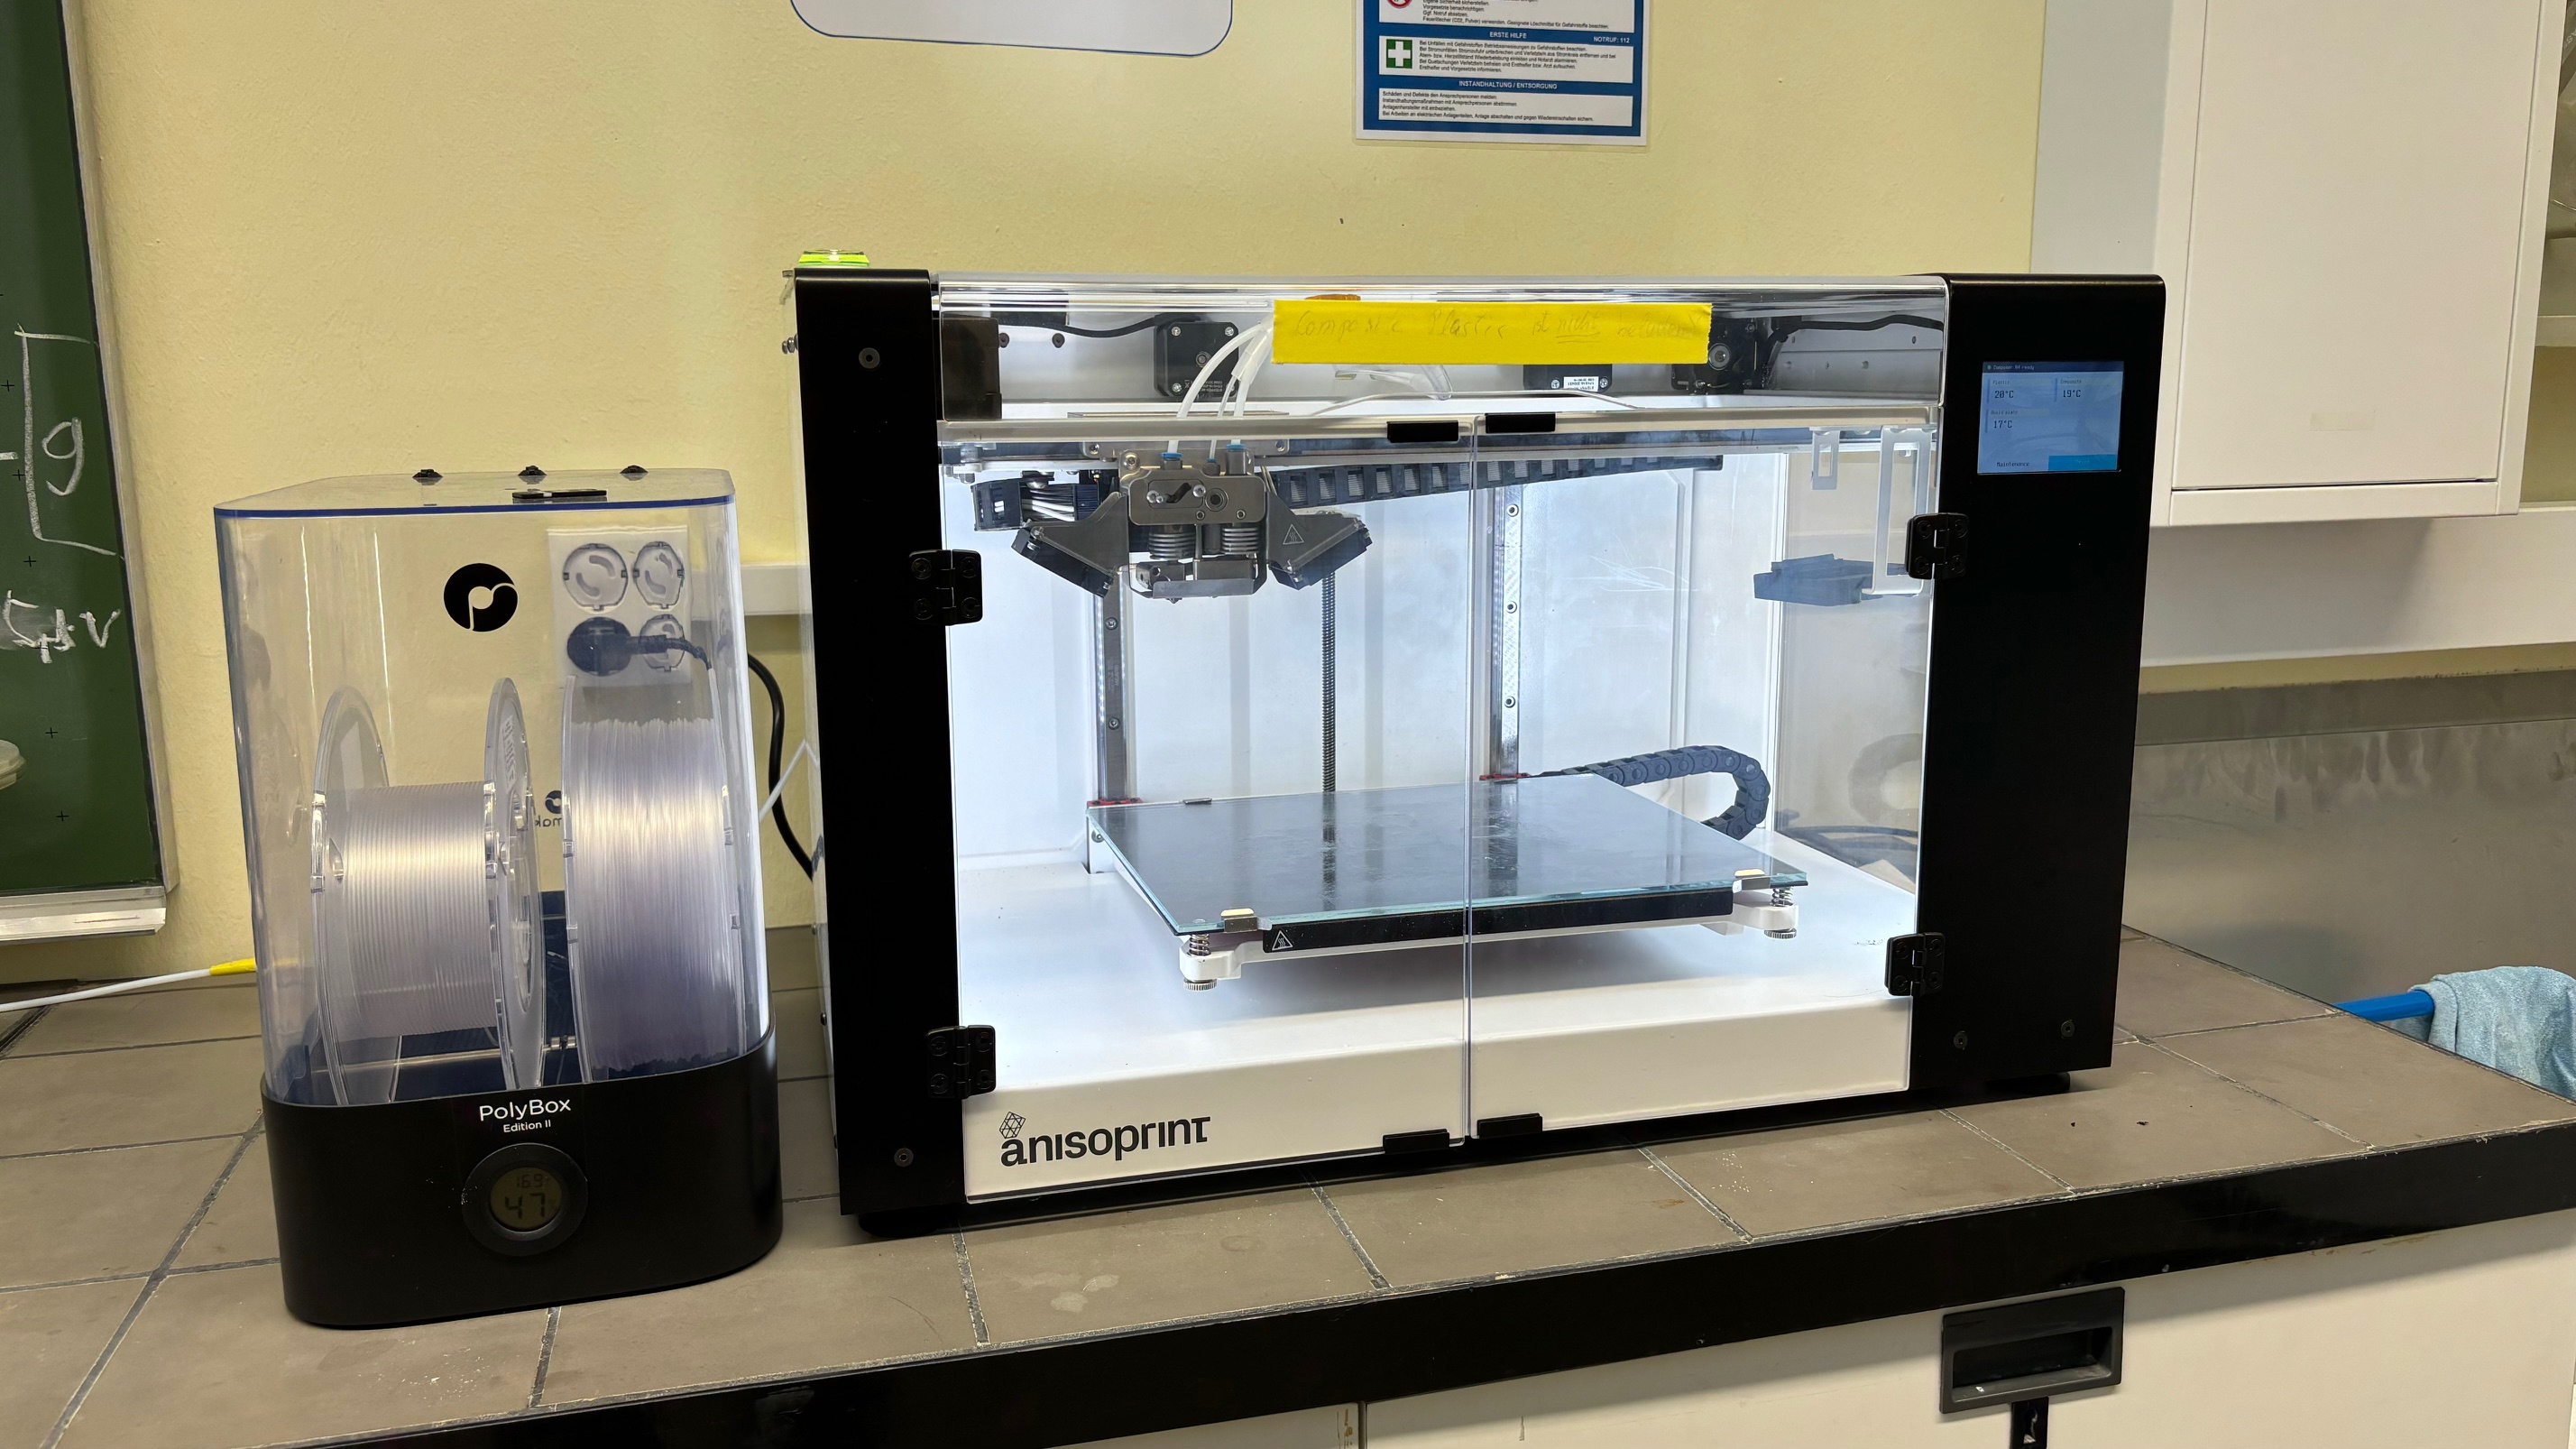 Gezeigt ist der Bauraum des 3D Druckers mit Zufuhr von zwei unterschiedlichen Polymeren.